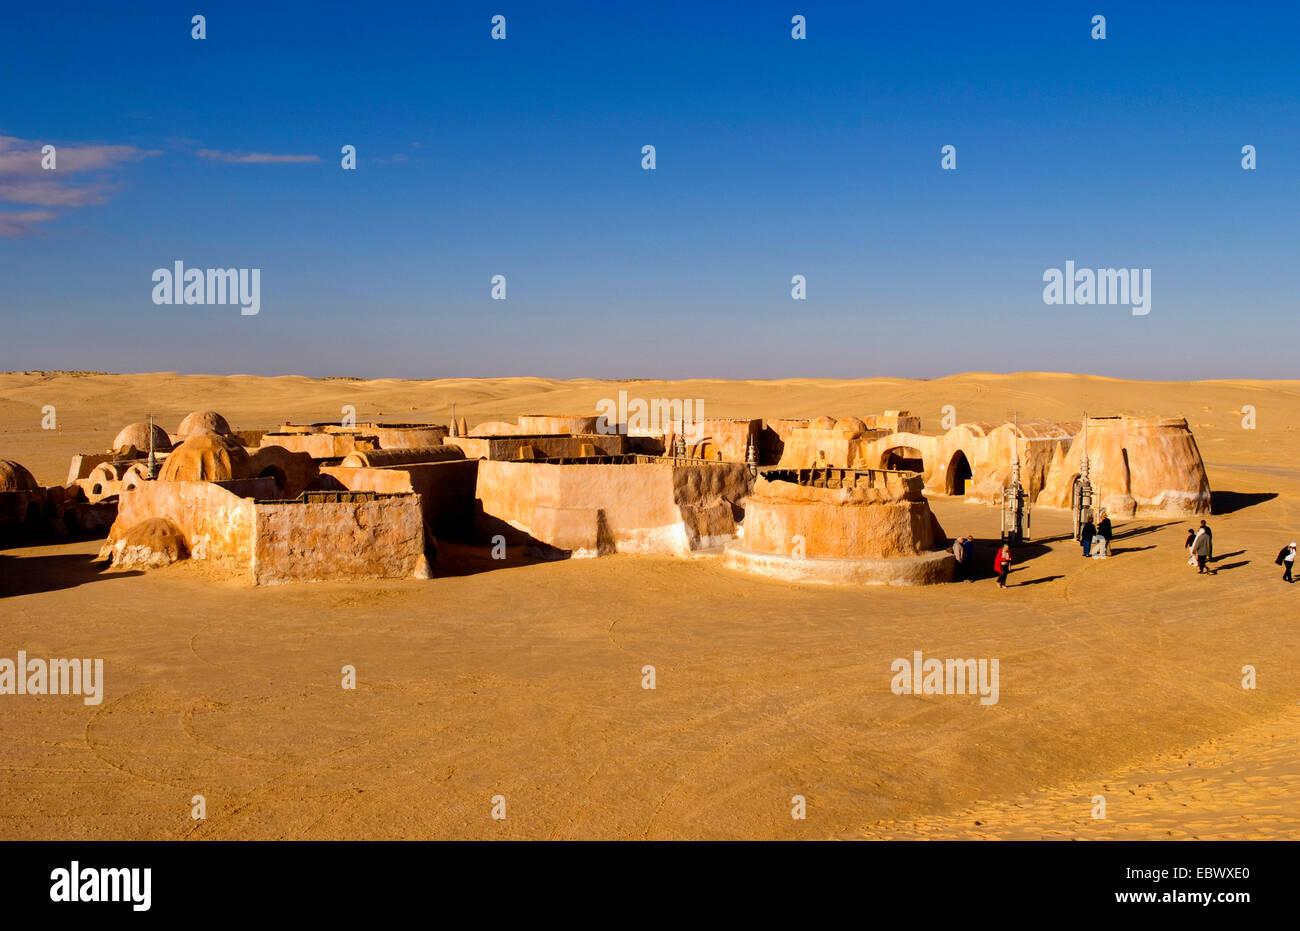 Film célèbre série de films Star Wars en désert du Sahara près de Tozeur, Tunisie Banque D'Images